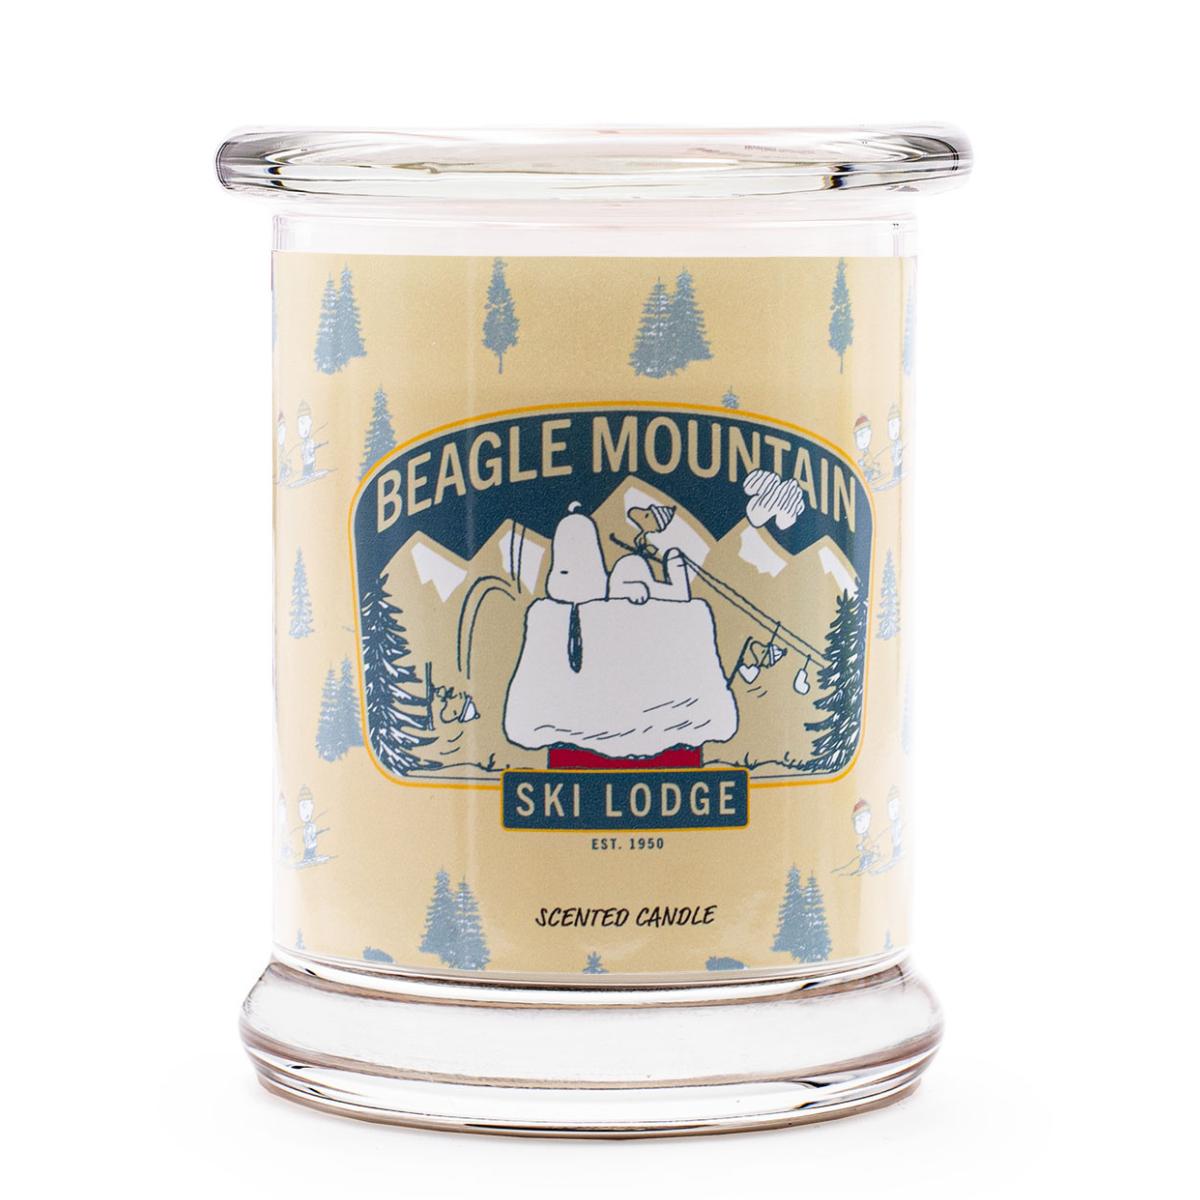 Beagle Mountain - Duftkerze 250g von Peanuts